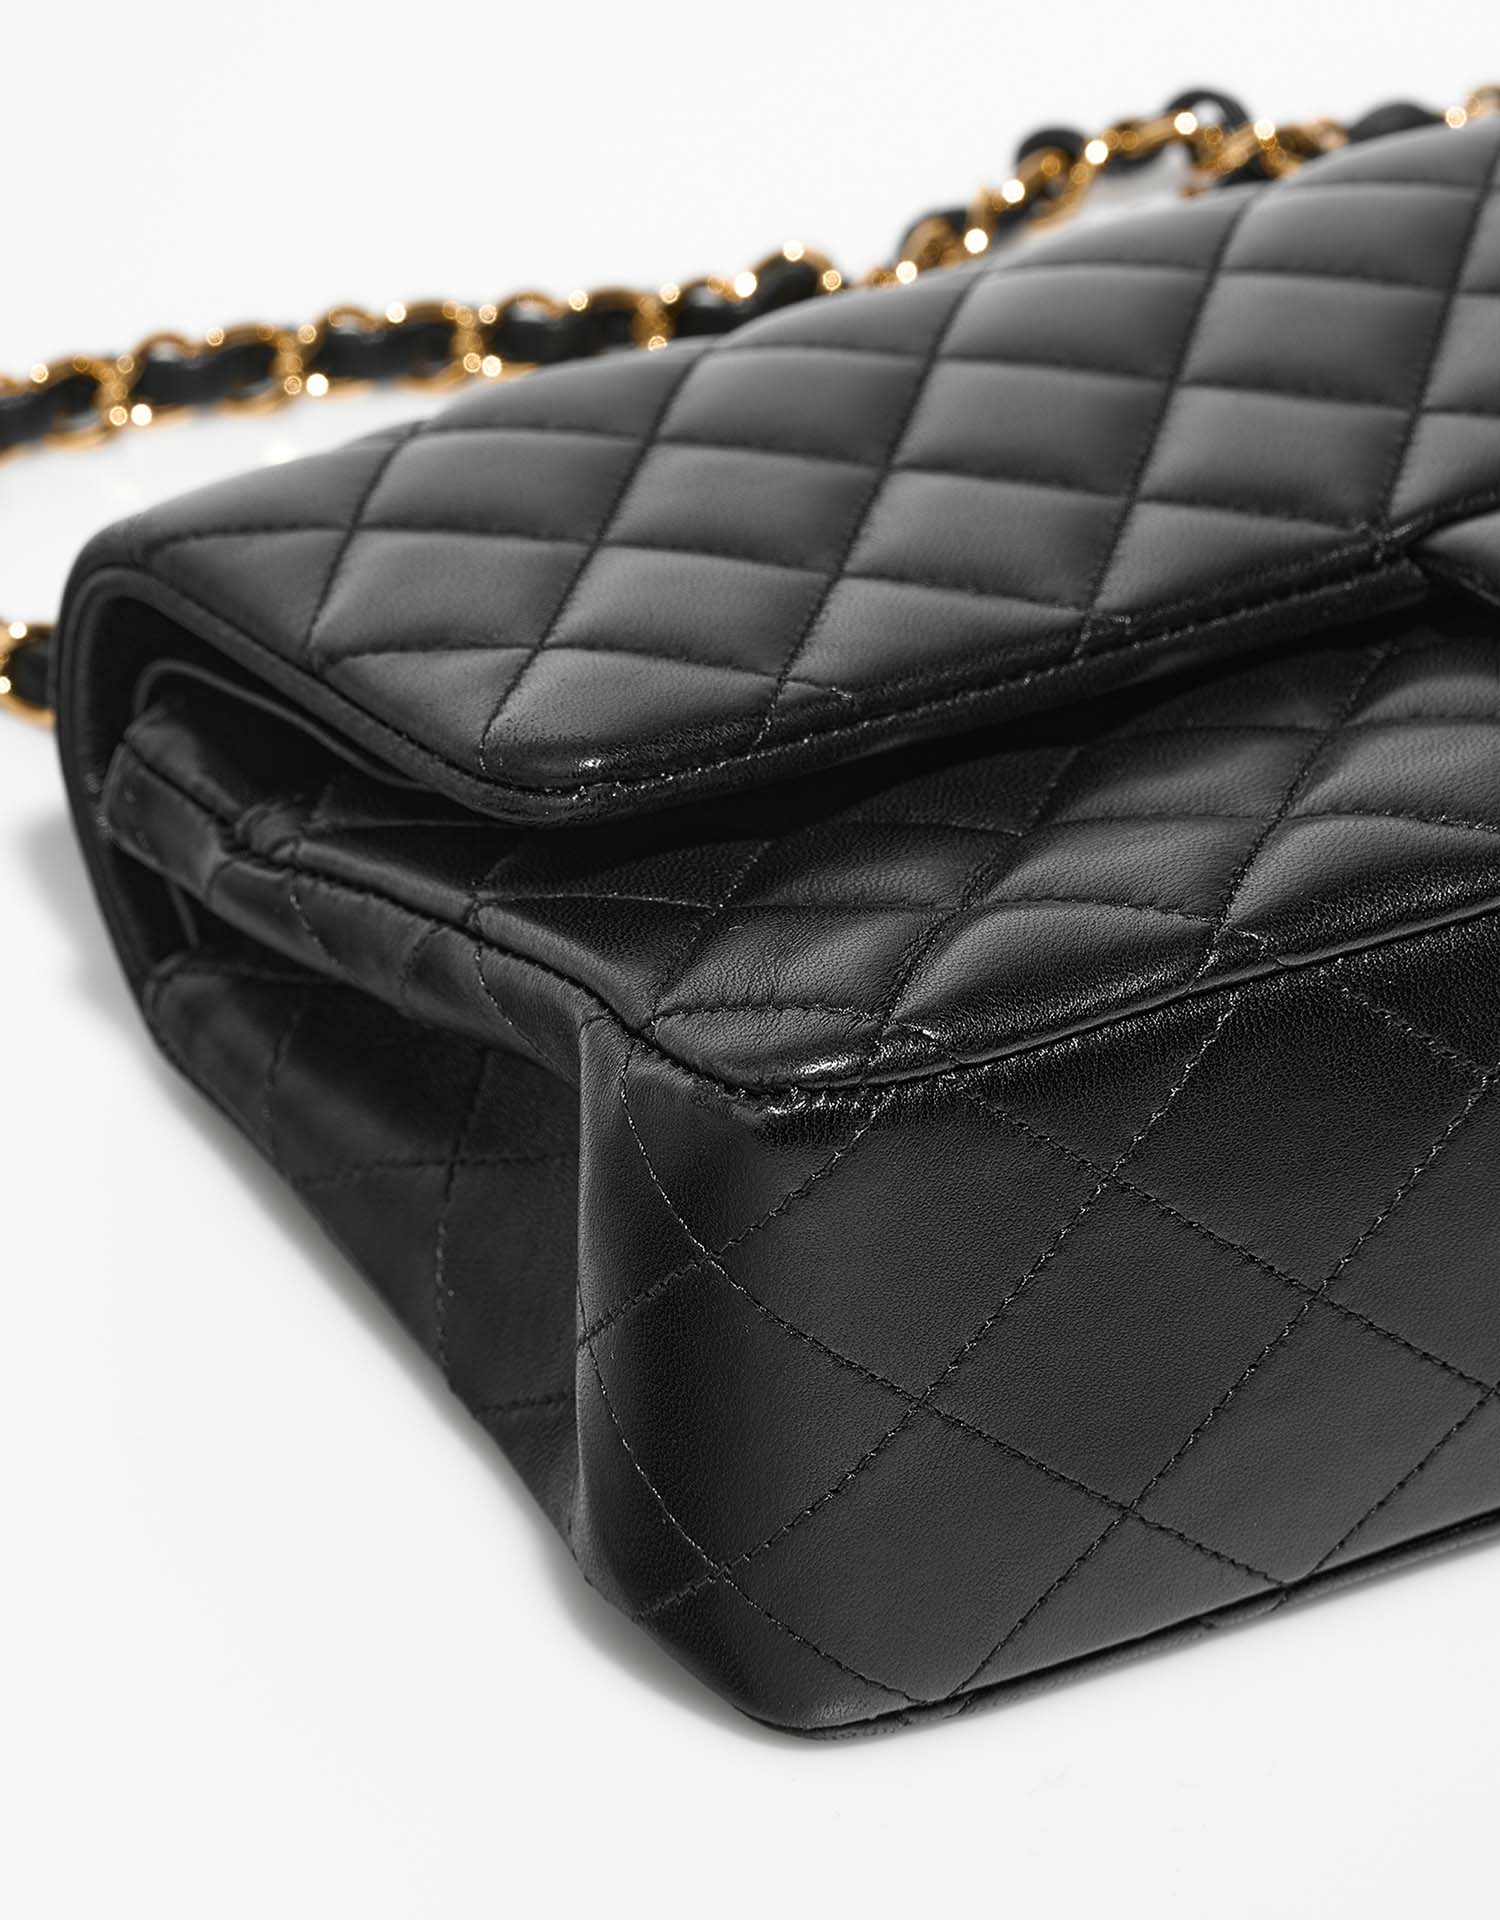 Chanel Timeless Medium Noir signes d'usure| Vendez votre sac de créateur sur Saclab.com